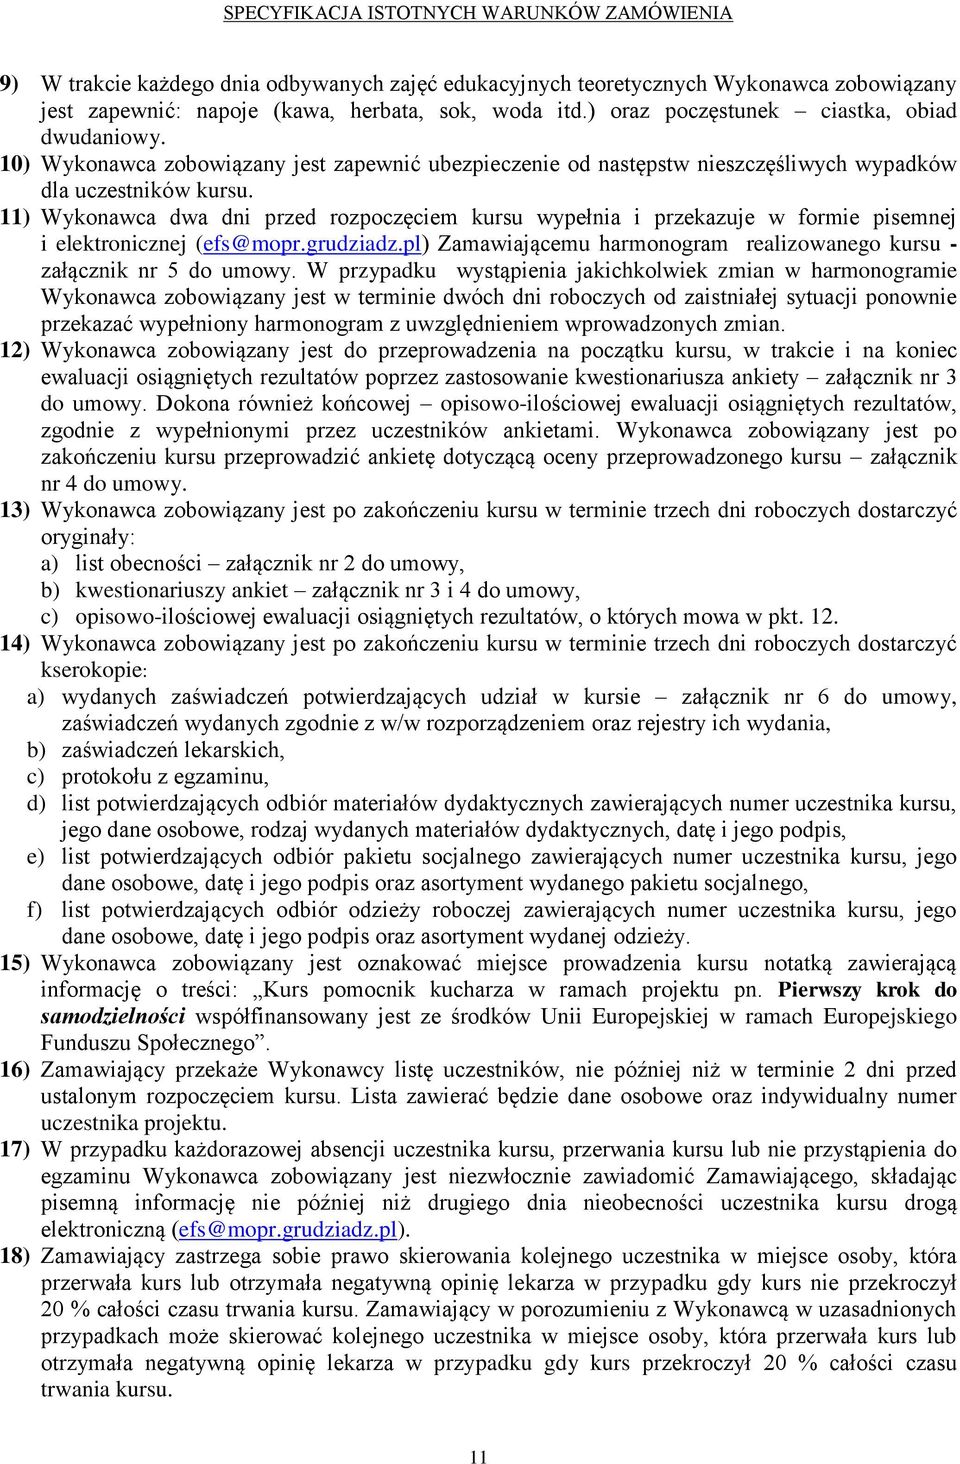 11) Wykonawca dwa dni przed rozpoczęciem kursu wypełnia i przekazuje w formie pisemnej i elektronicznej (efs@mopr.grudziadz.pl) Zamawiającemu harmonogram realizowanego kursu - załącznik nr 5 do umowy.